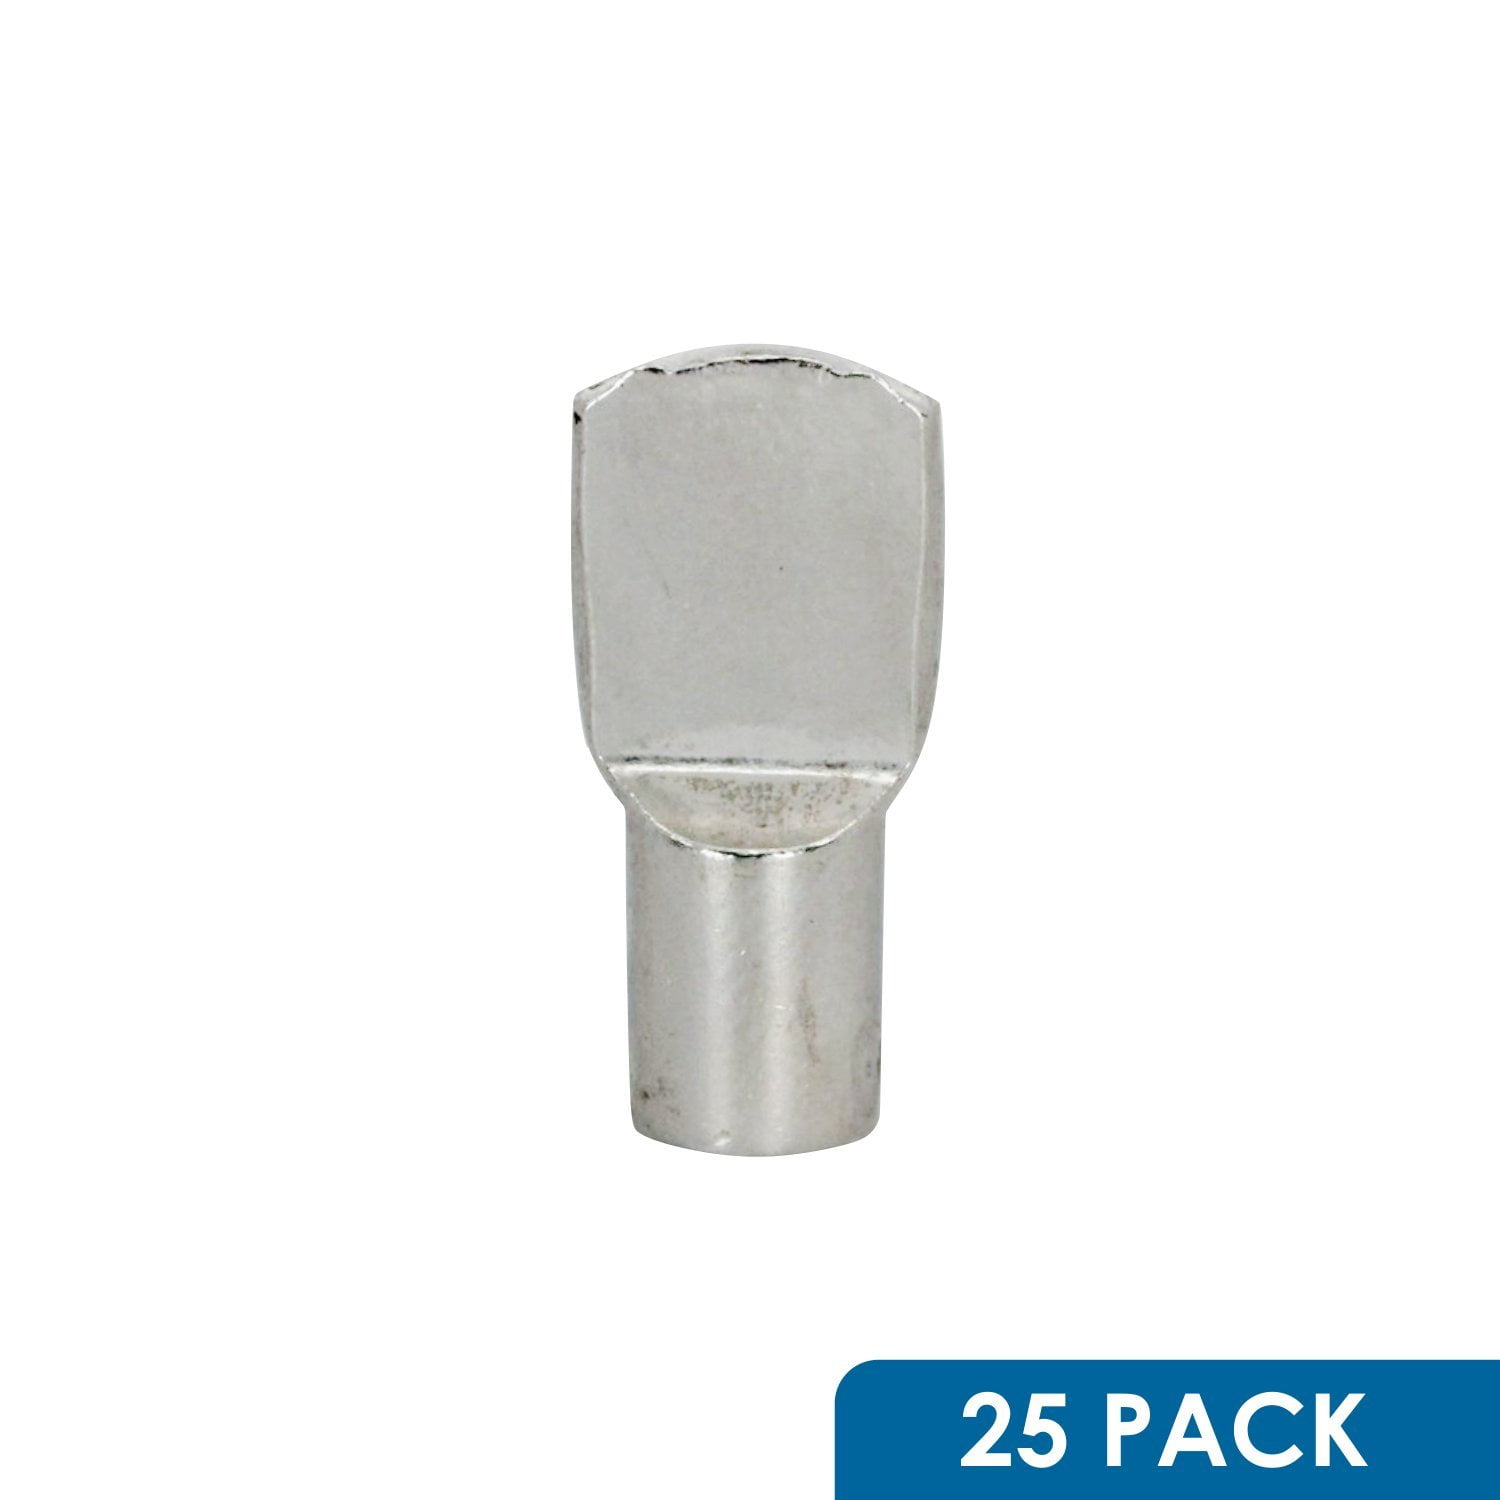 24 Pc 5 mm Diameter Spoon-Shape Pin Peg Cabinet Nickel Shelf Rests Bracket 